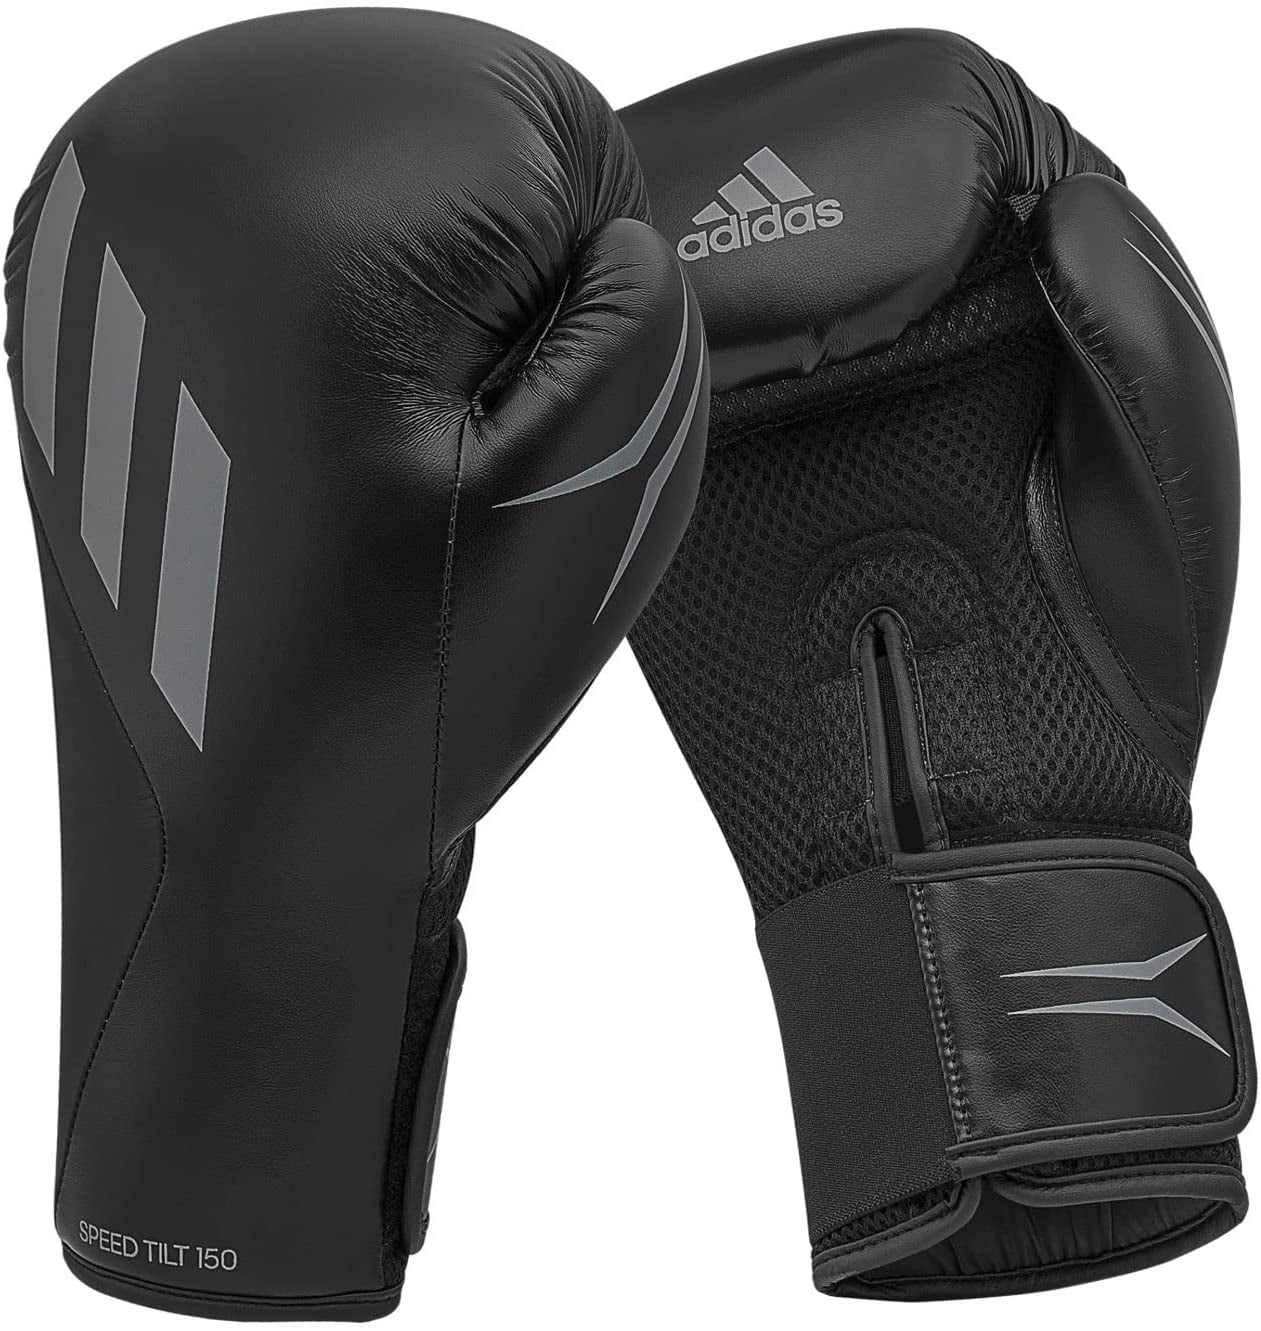 - 150 10 Gloves Women, TILT Adidas oz Unisex, Balck/Gray, Fighting for Men, and Mat Boxing Speed Training Gloves